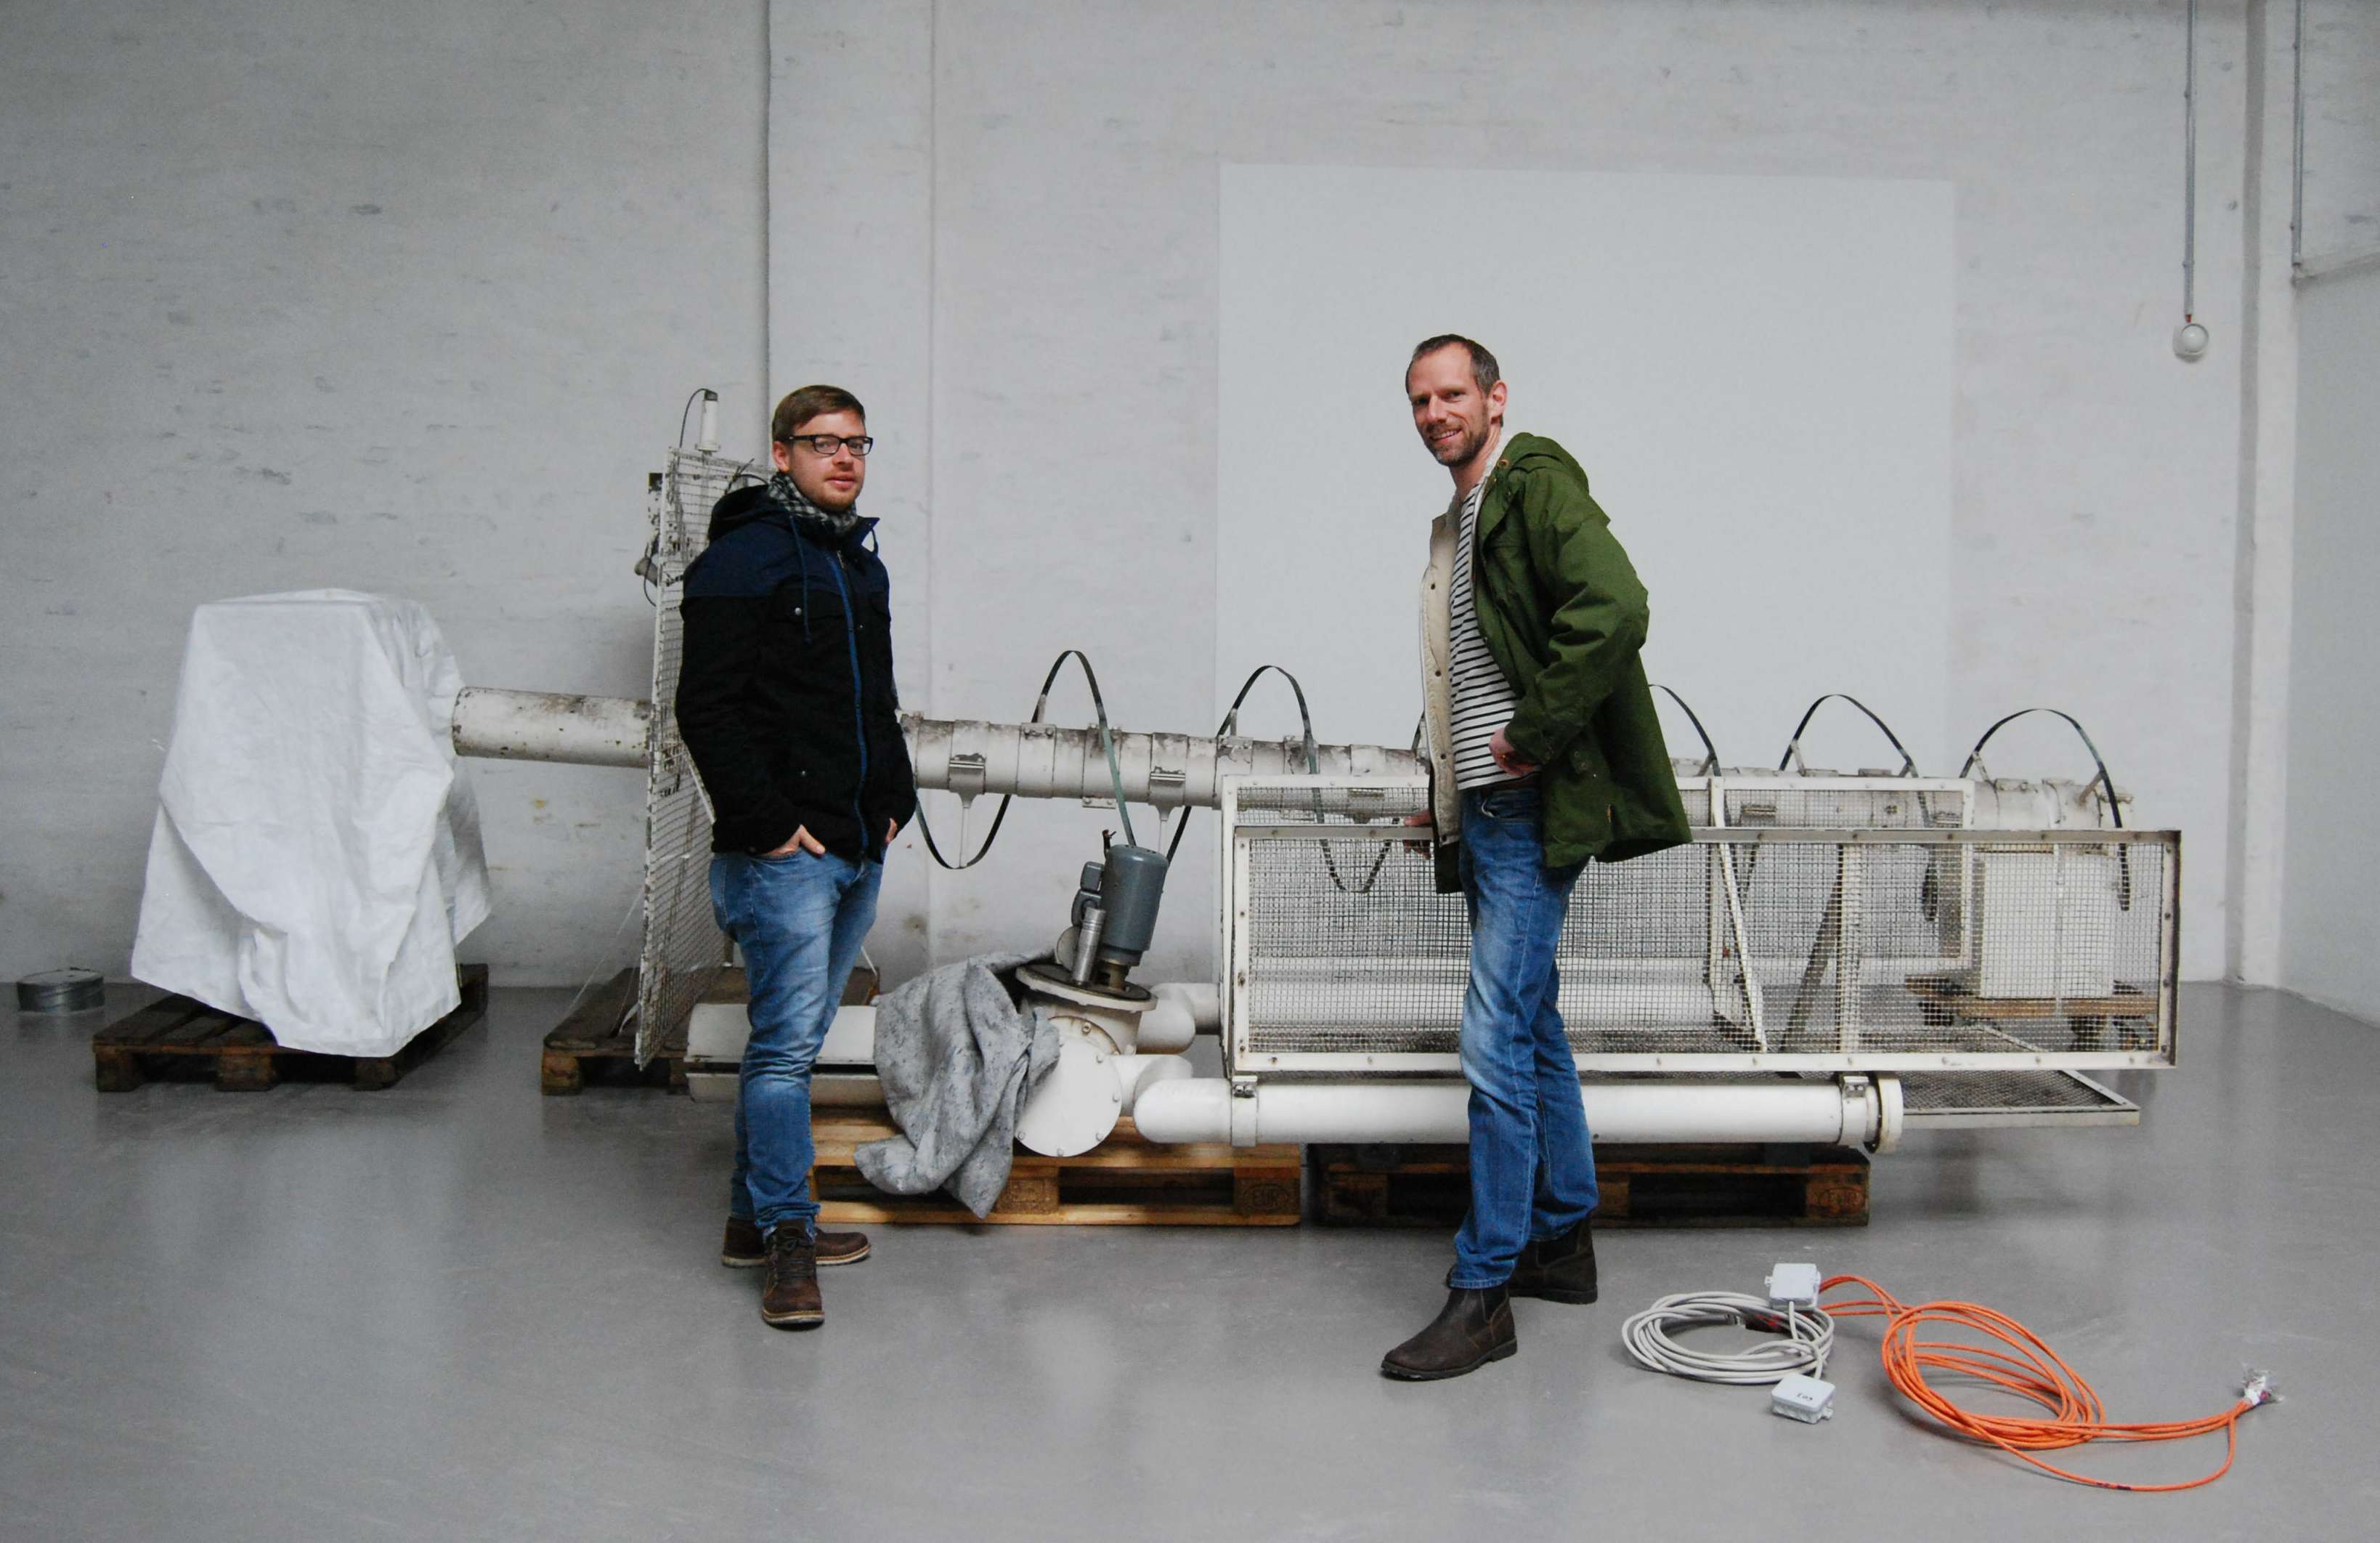 Das erste Ausstellungsobjekt ist heute angekommen. Sebastian und Bernd haben es in Augenschein genommen: eine große Wendelantenne zum Datenempfang von Wettersatelliten. Foto: SDTB / Rüsewald